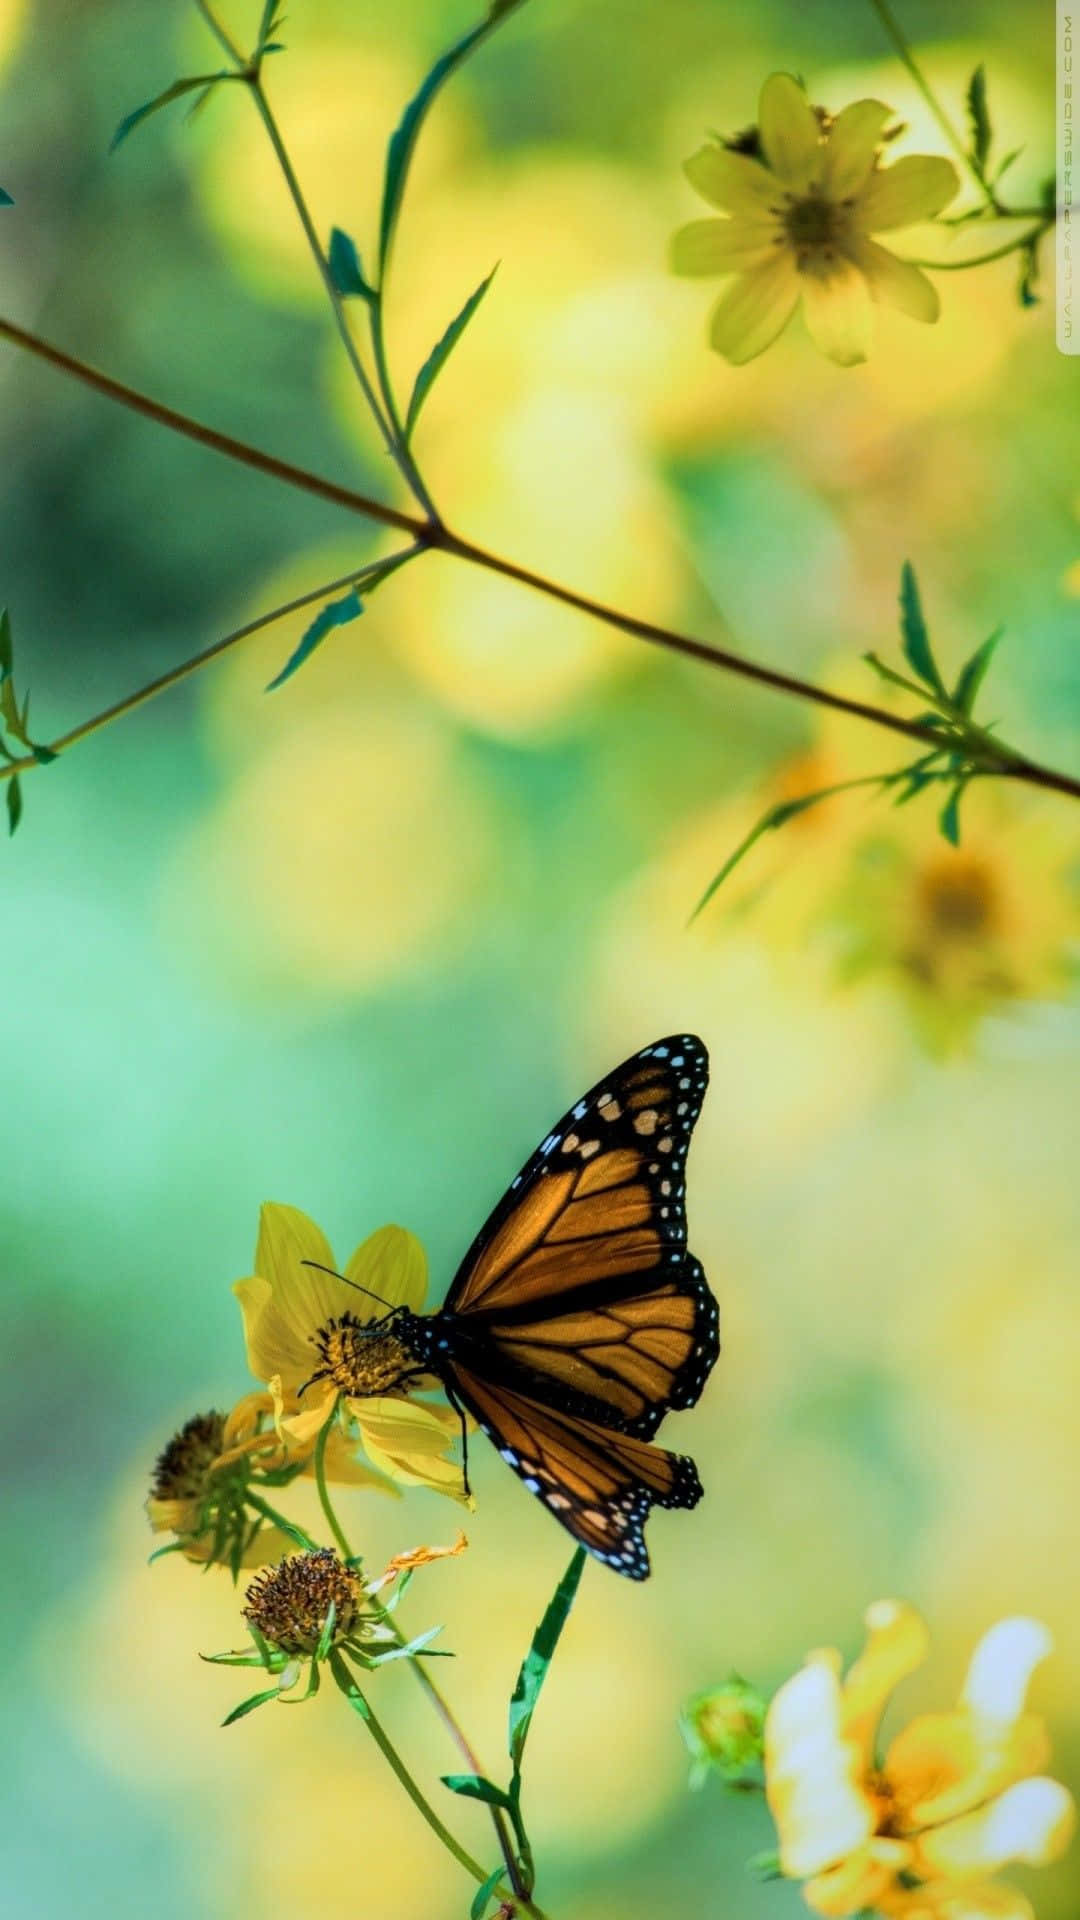 A beautiful butterfly enjoying the morning sun